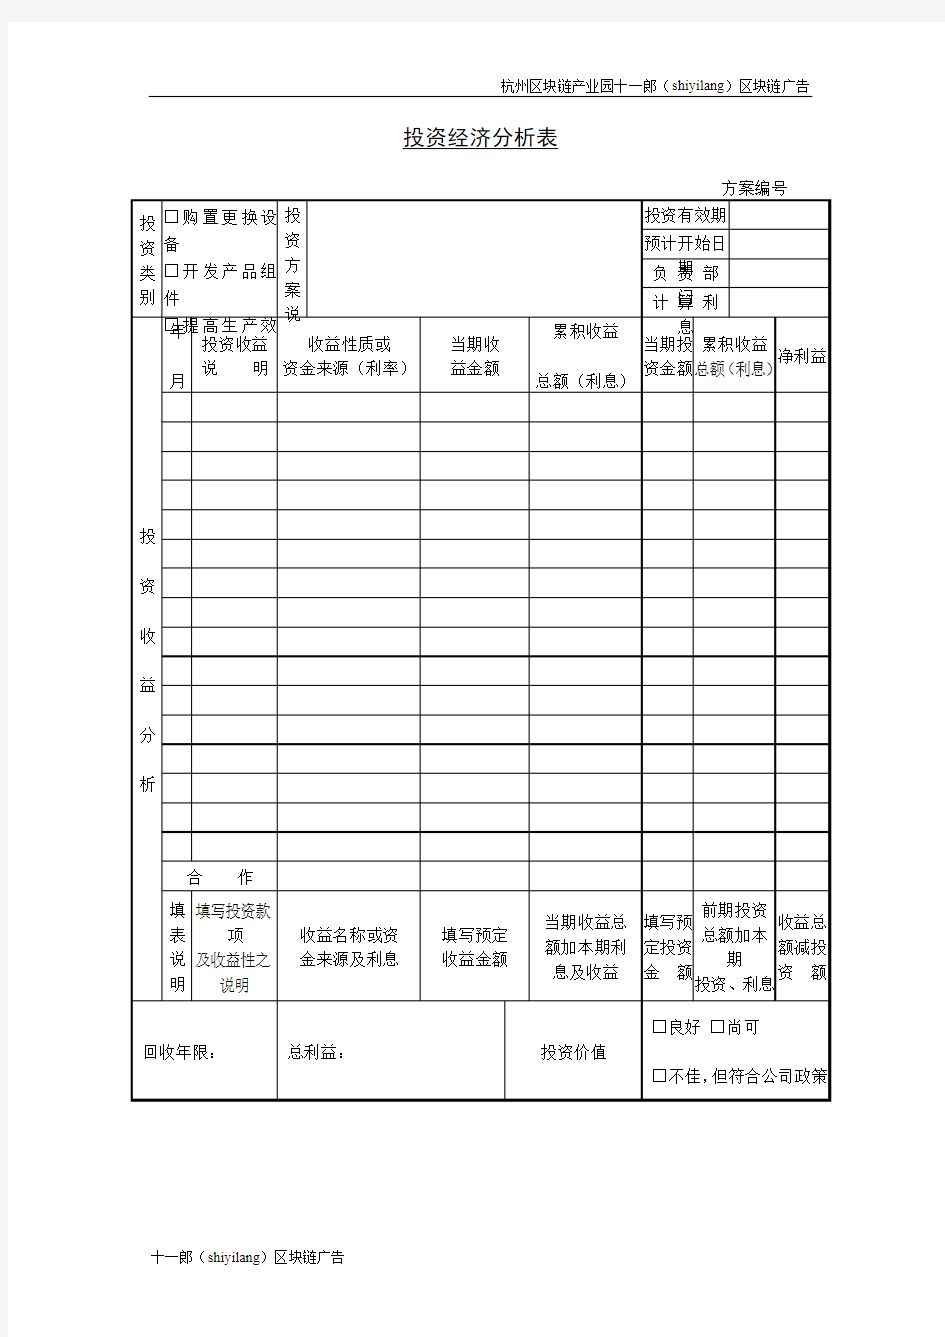 杭州区块链产业园投资经济分析表